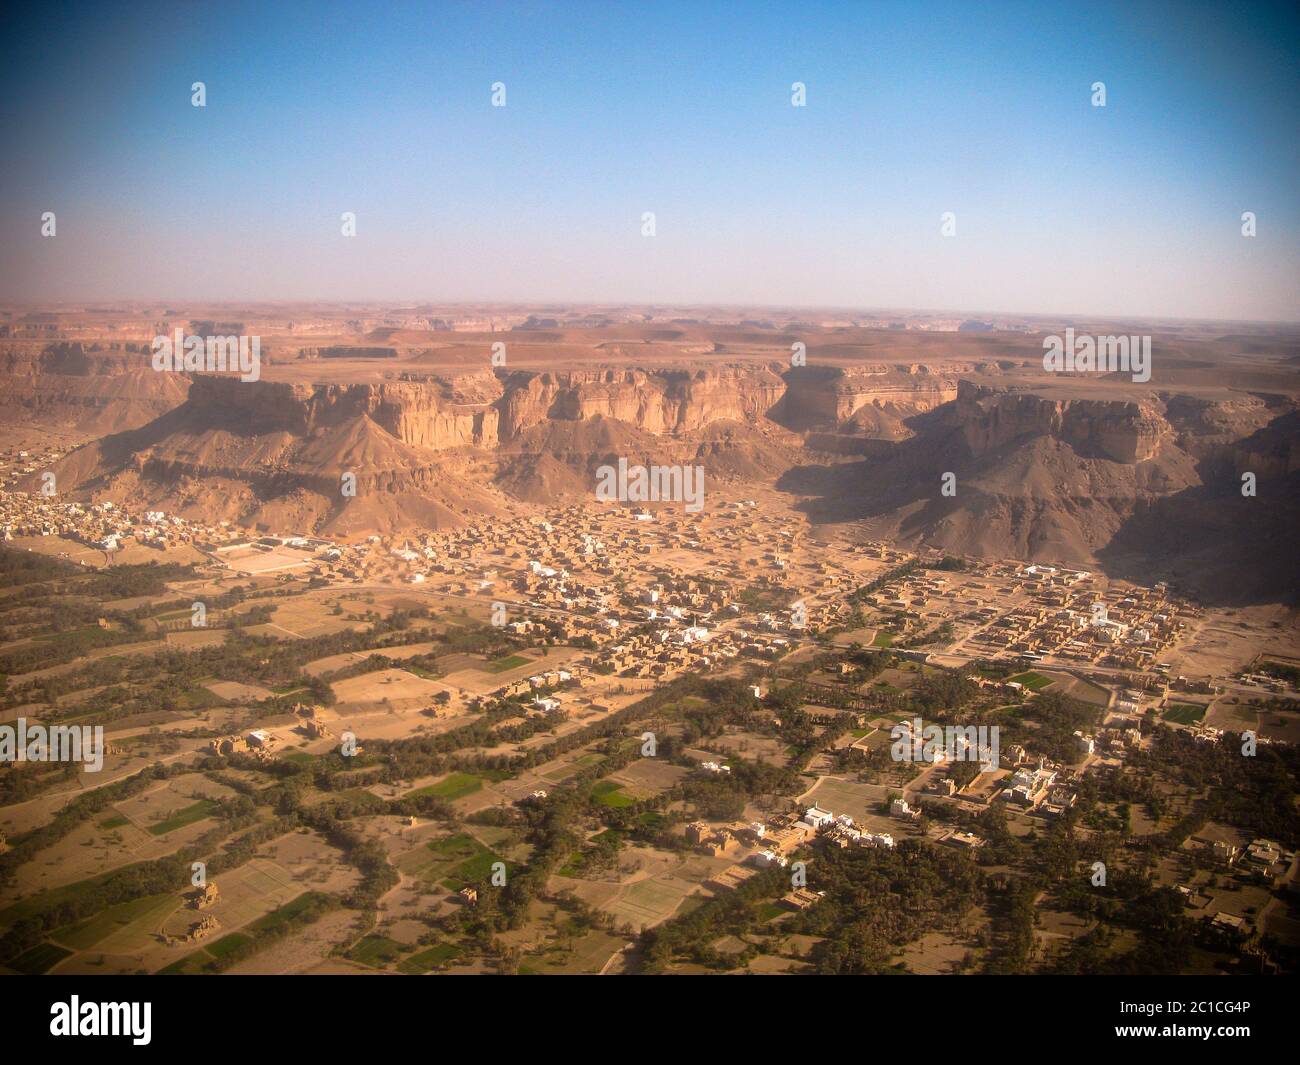 Aerial view to Shibam city and wadi Hadhramaut, Yemen Stock Photo